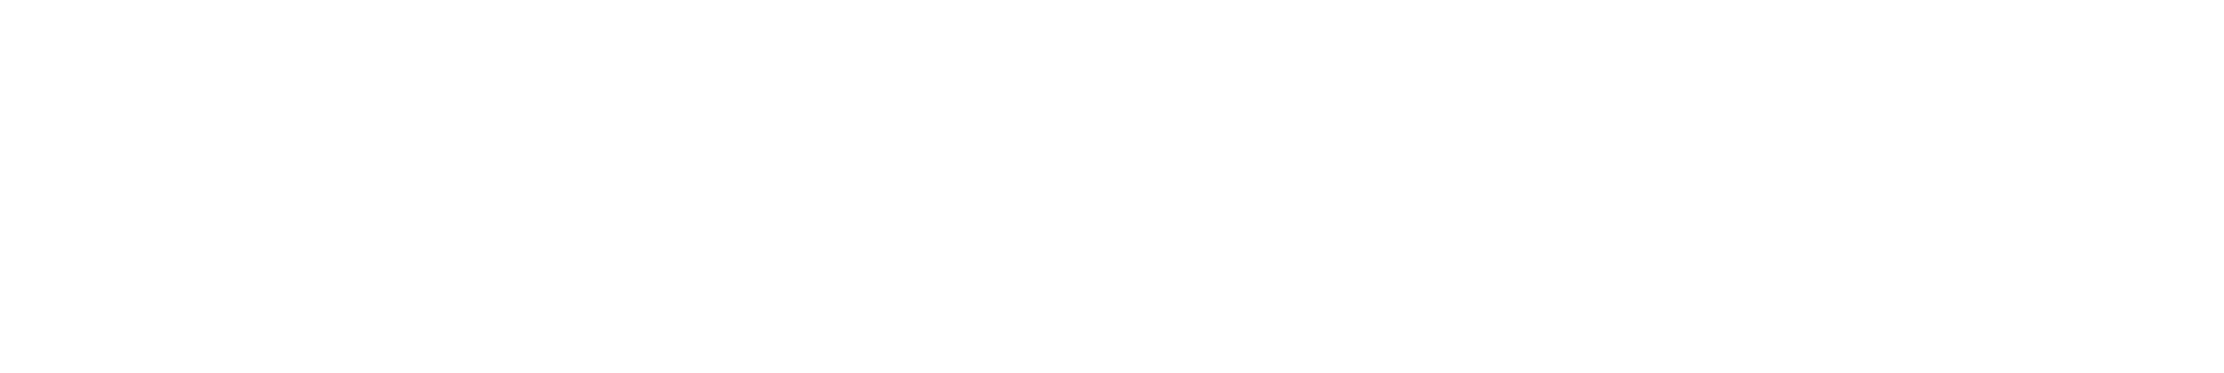 Feedonomics logo white 2020